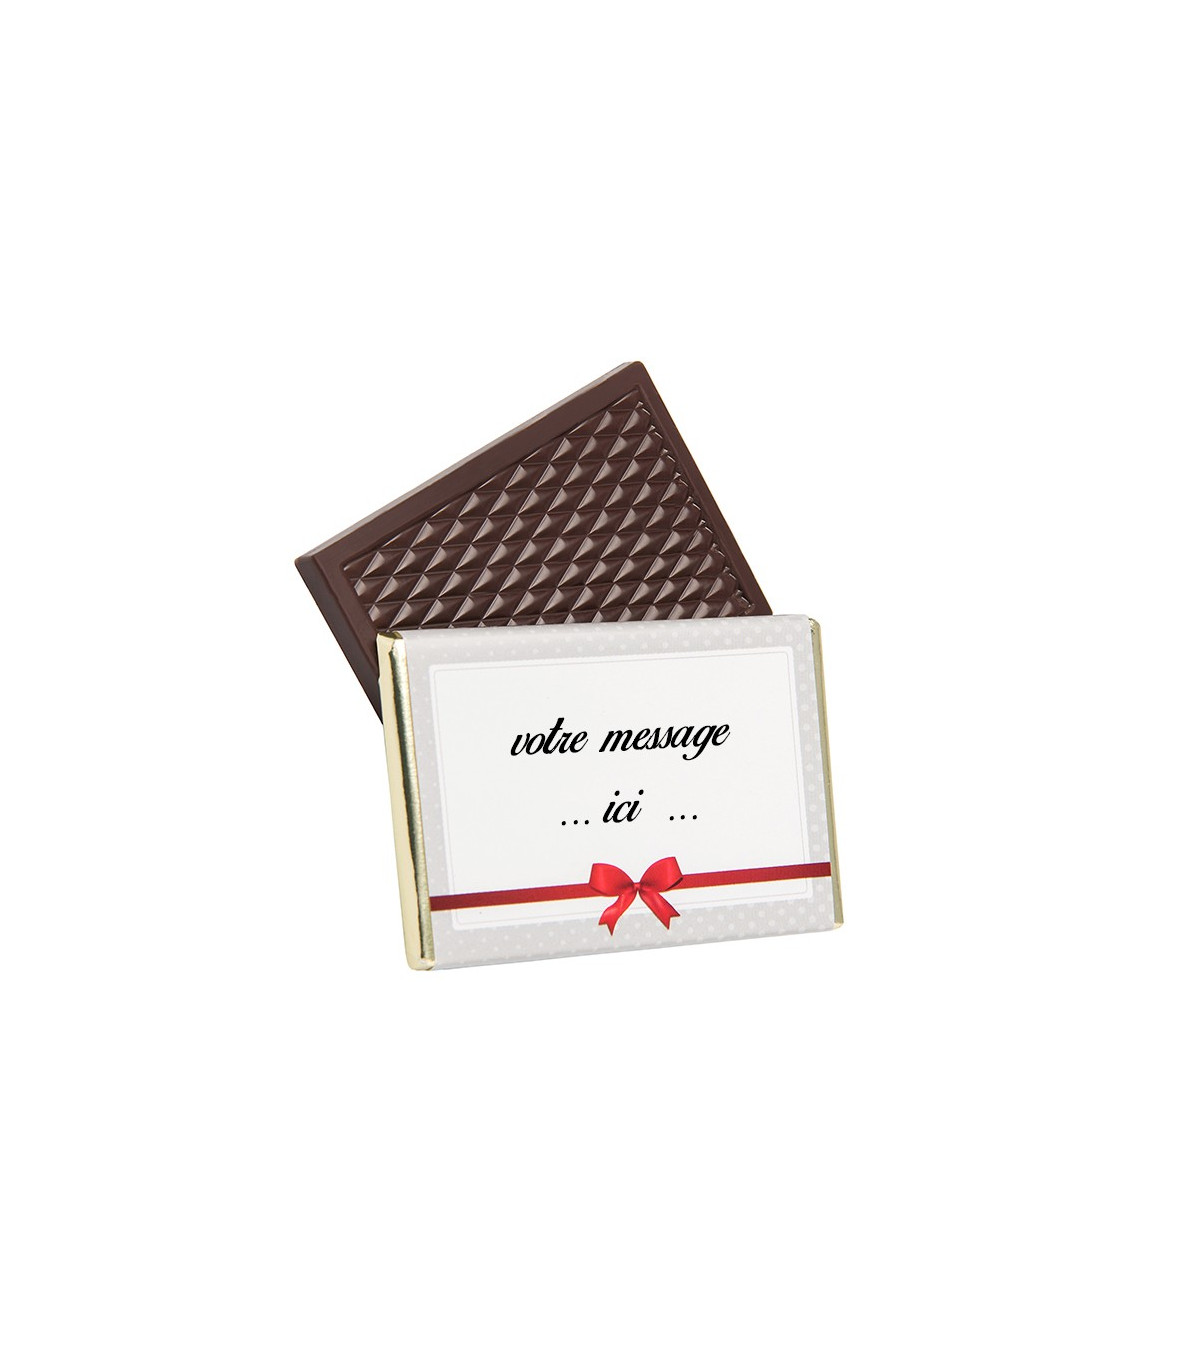 Tablette de chocolat personnalisé - Chocolat D'lys couleurs